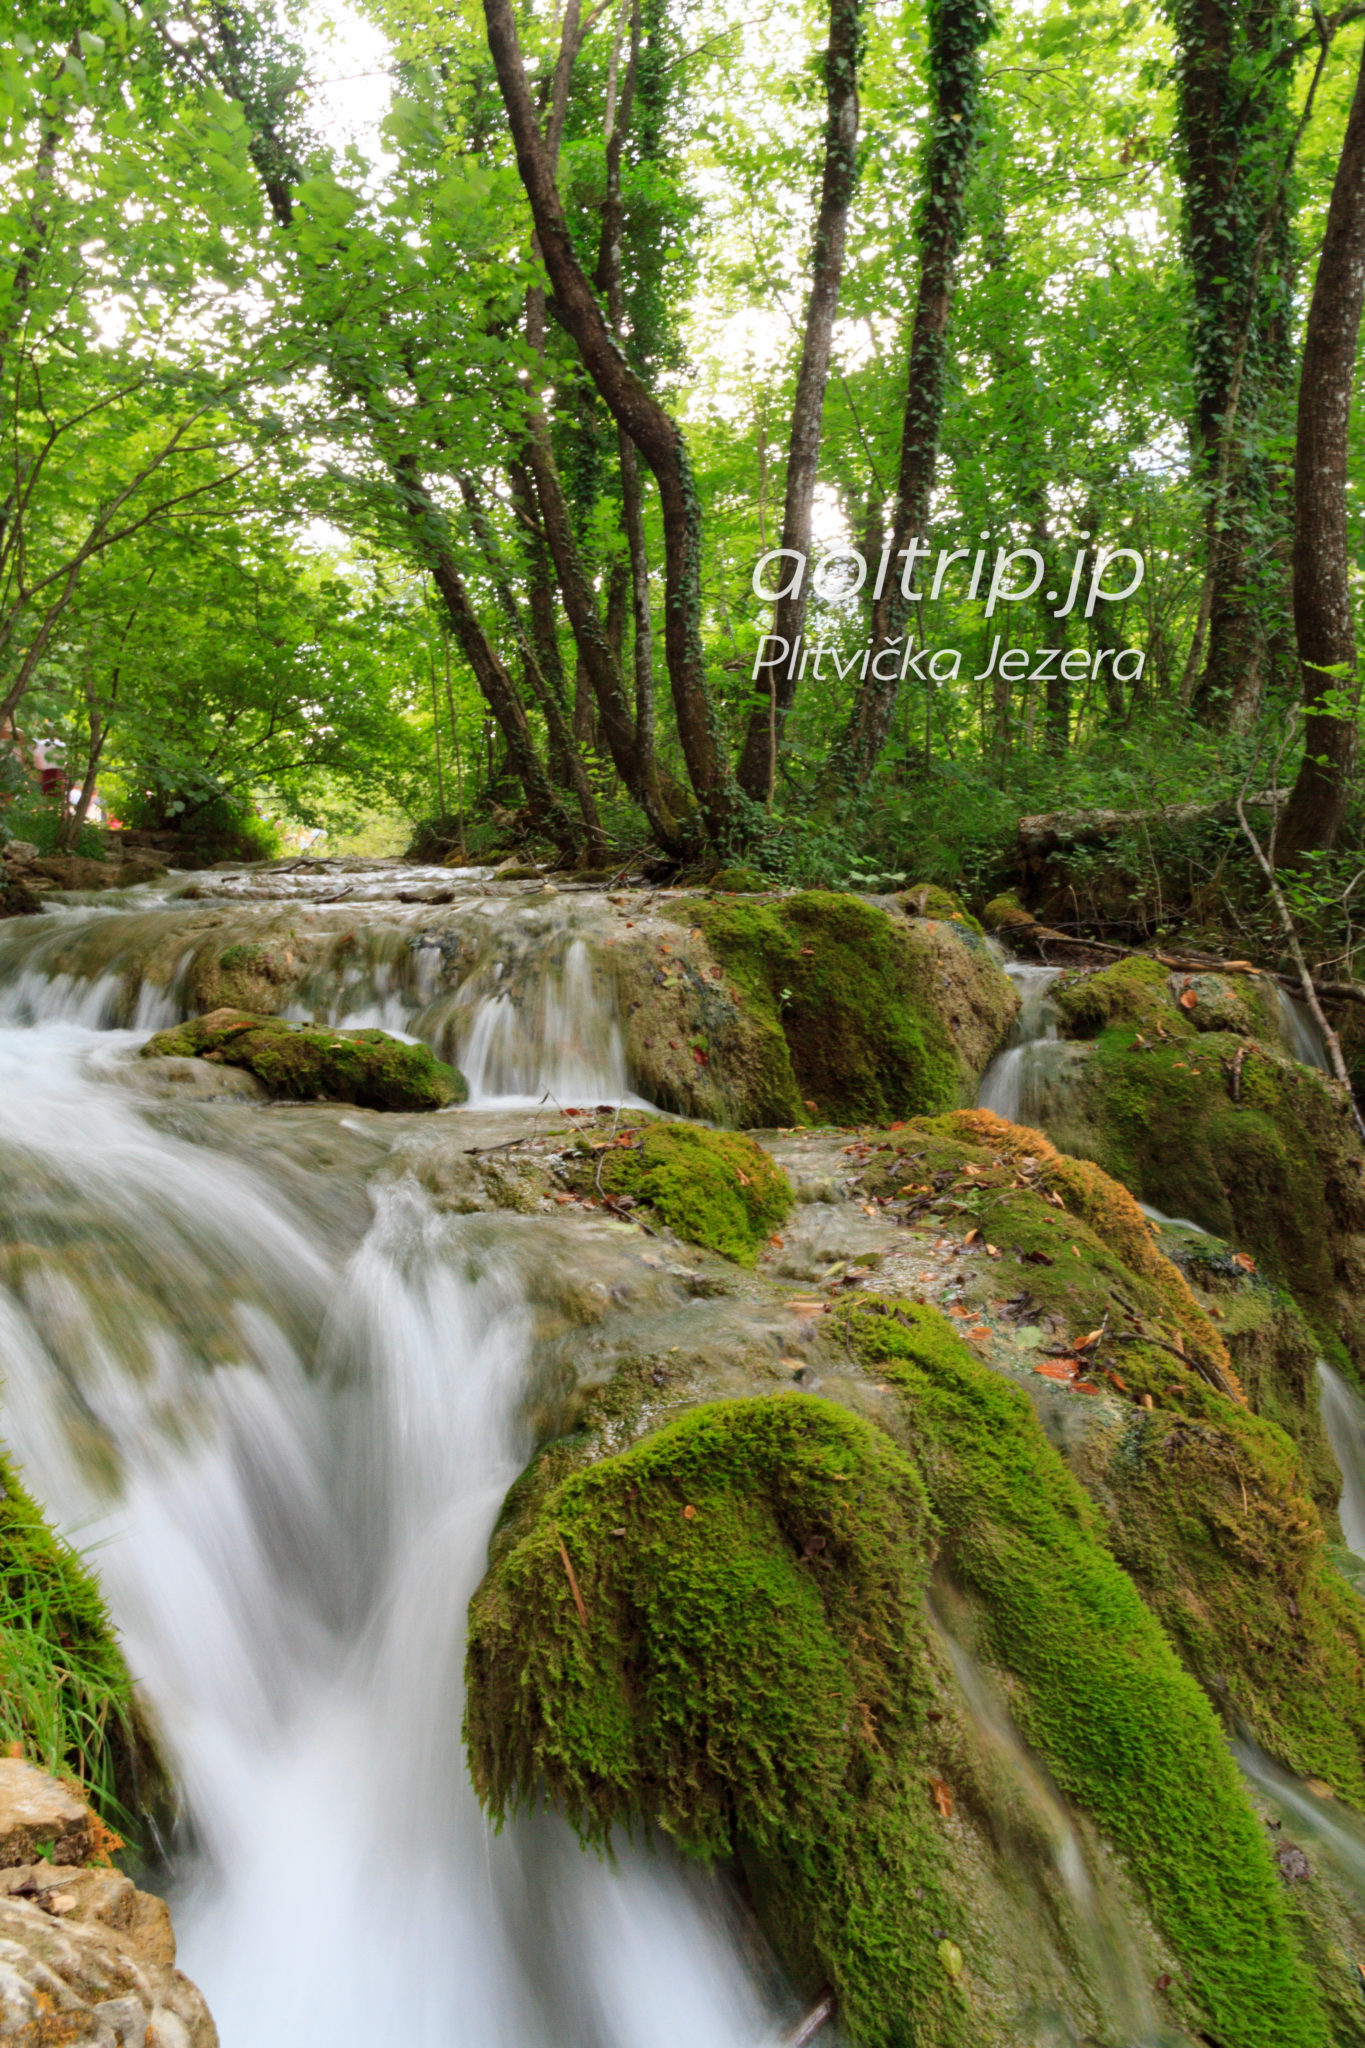 プリトヴィツェ湖群国立公園（クロアチア・世界遺産）